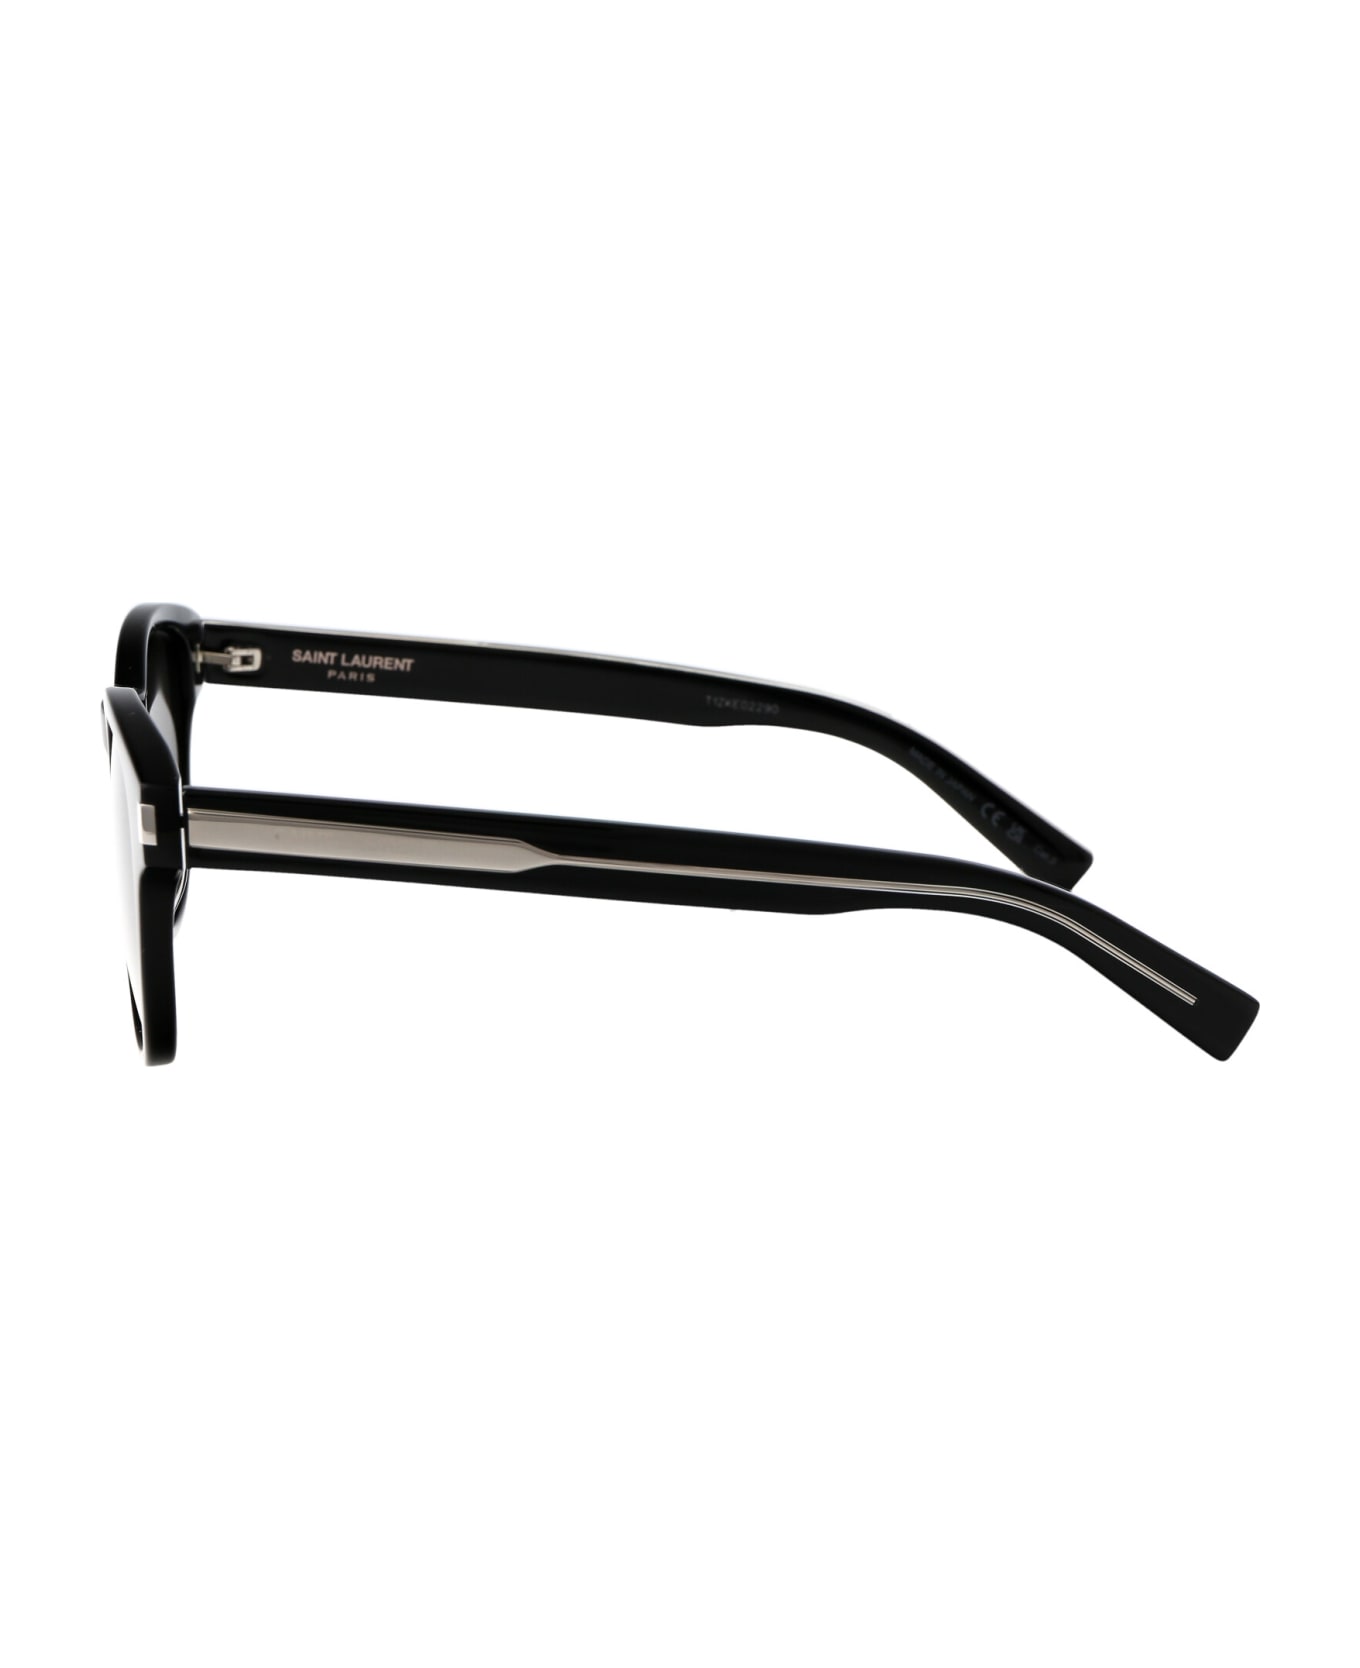 Saint Laurent Eyewear Sl 620 Sunglasses - 001 BLACK CRYSTAL BLACK